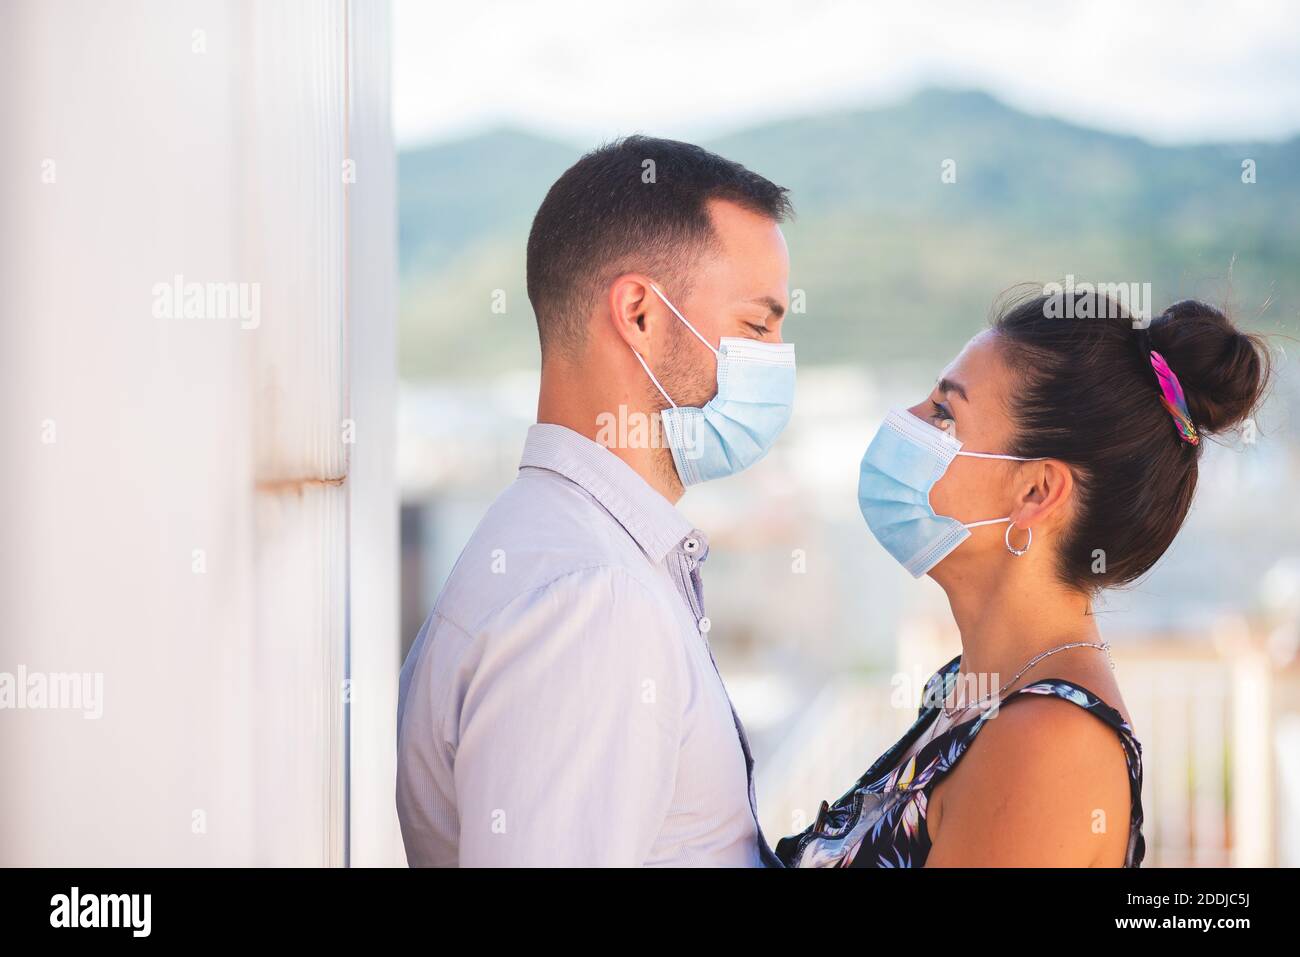 Un hombre y una mujer mirando entre sí máscaras de protección contra coronavirus Foto de stock